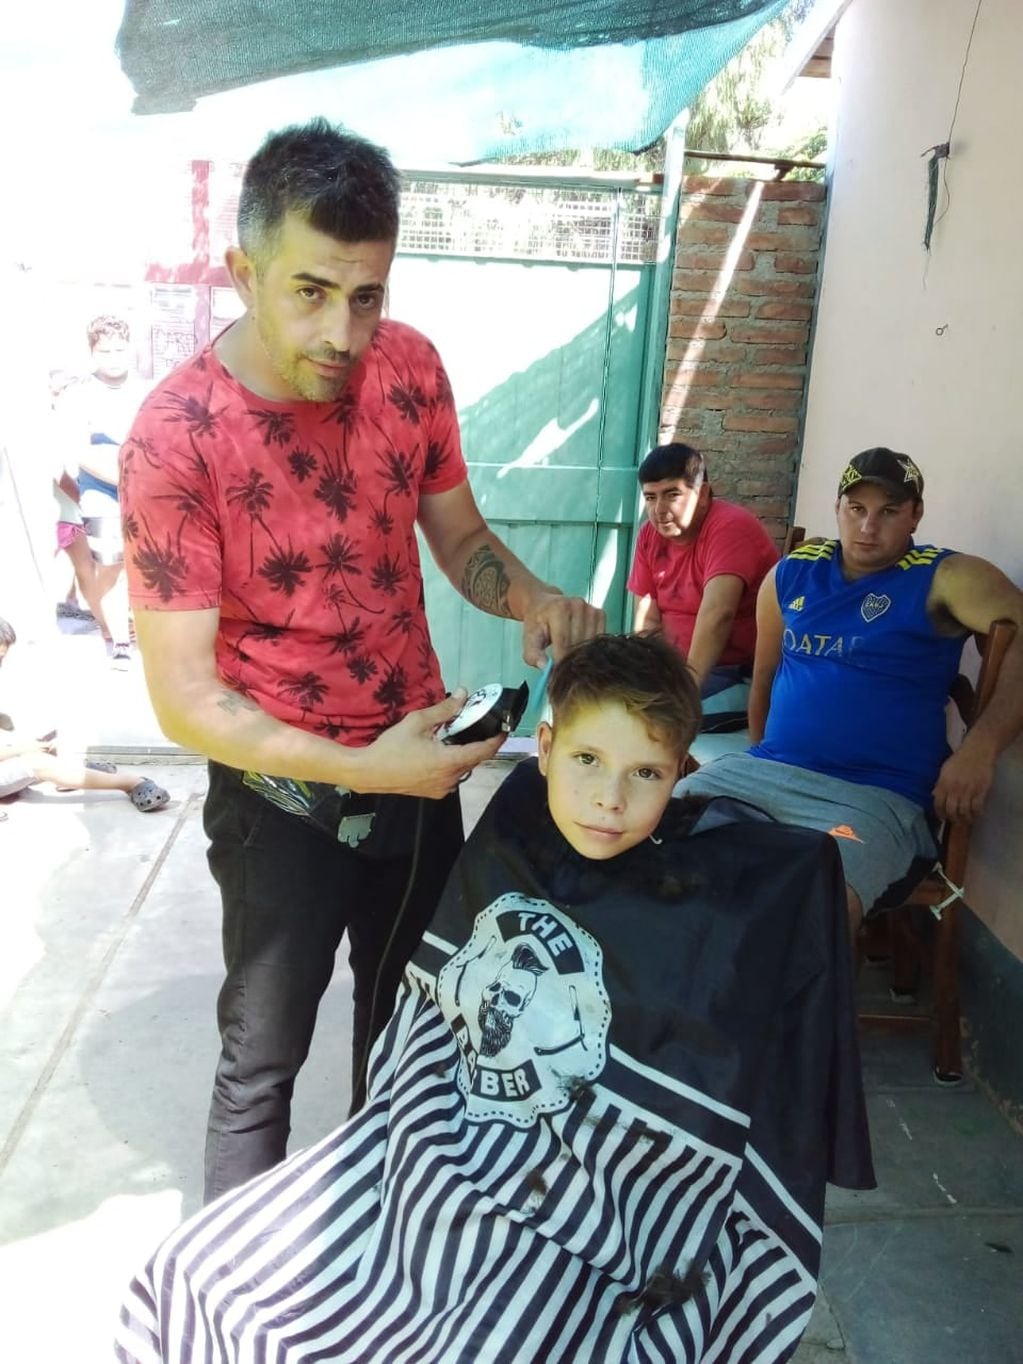 Los peluqueros quieren ayudar a la familia de un niño de 4 años internado en el Notti con cáncer.